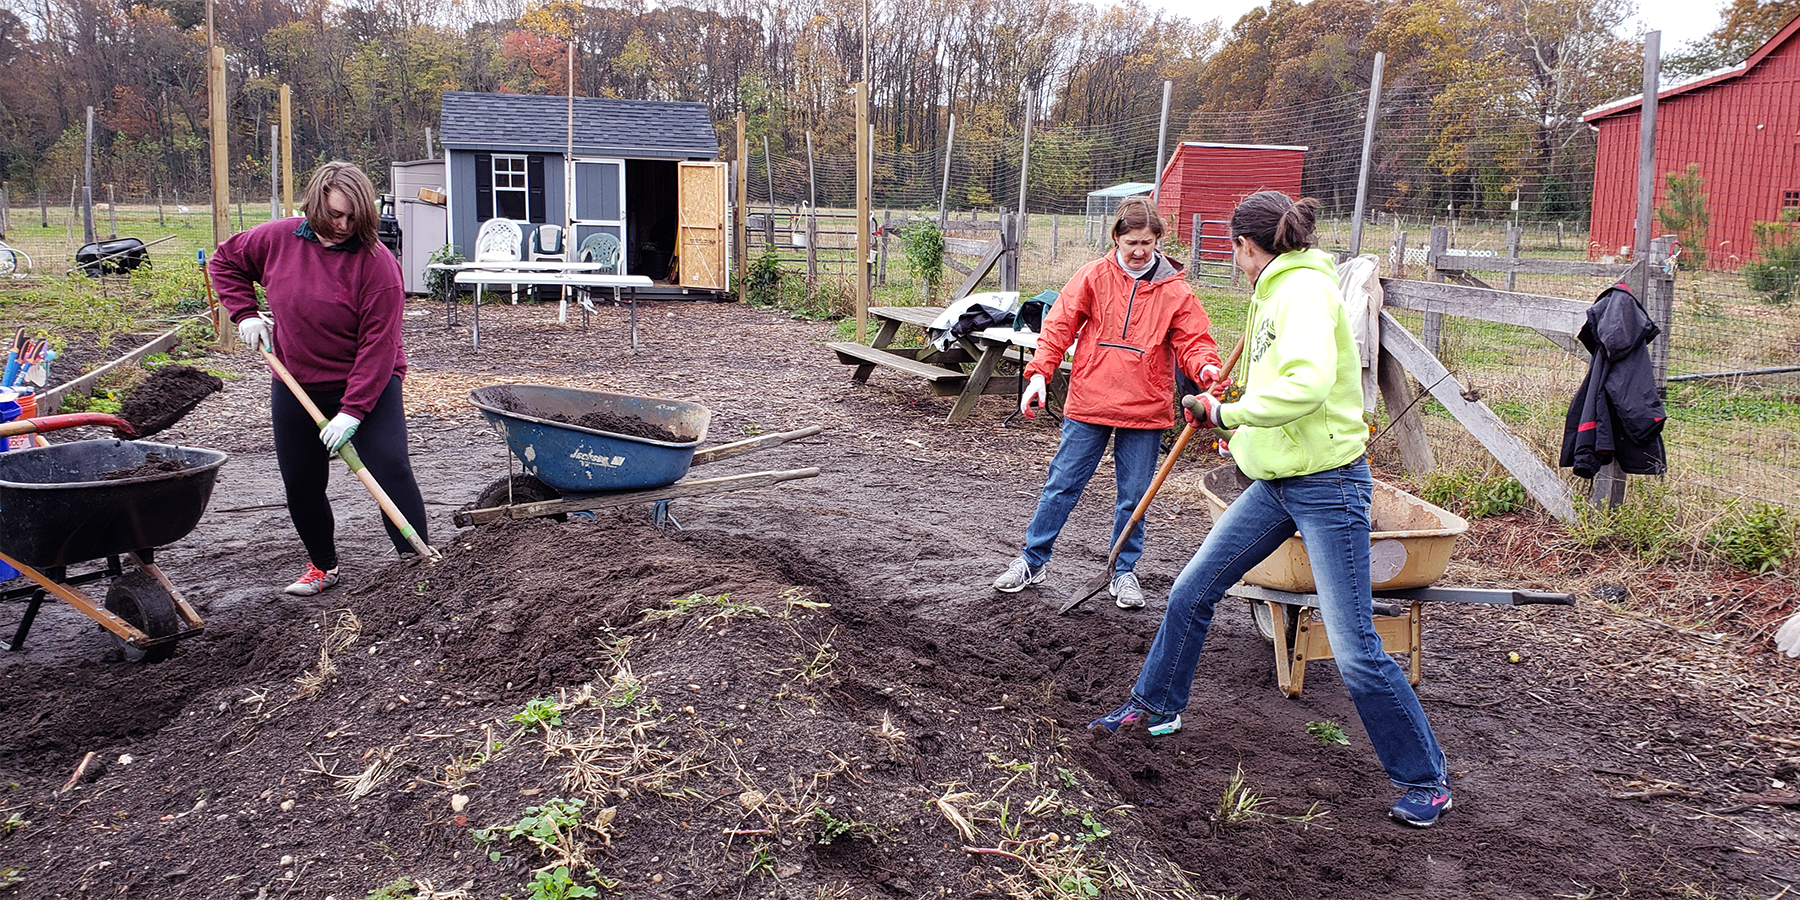  지원자는 정원을 강화하기 위해 퇴비 더미를 만든다. 사진은 Selwyn Avenue 장로교회에서 제공한 것이다.